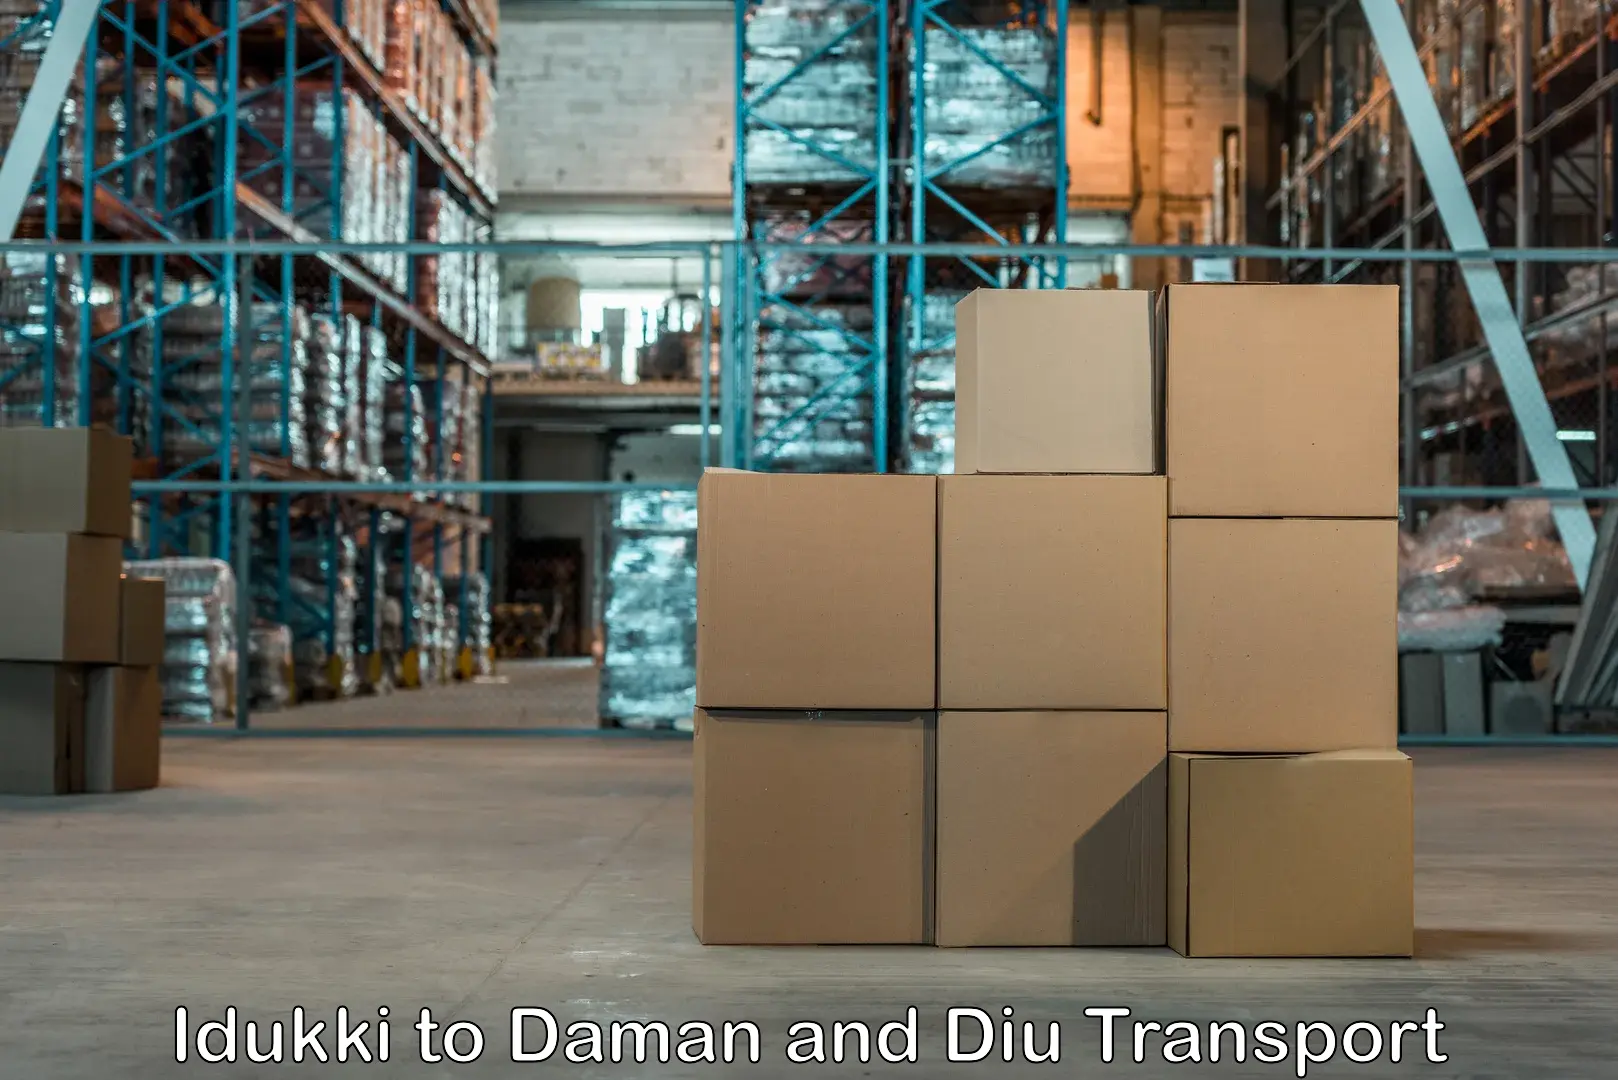 All India transport service Idukki to Daman and Diu